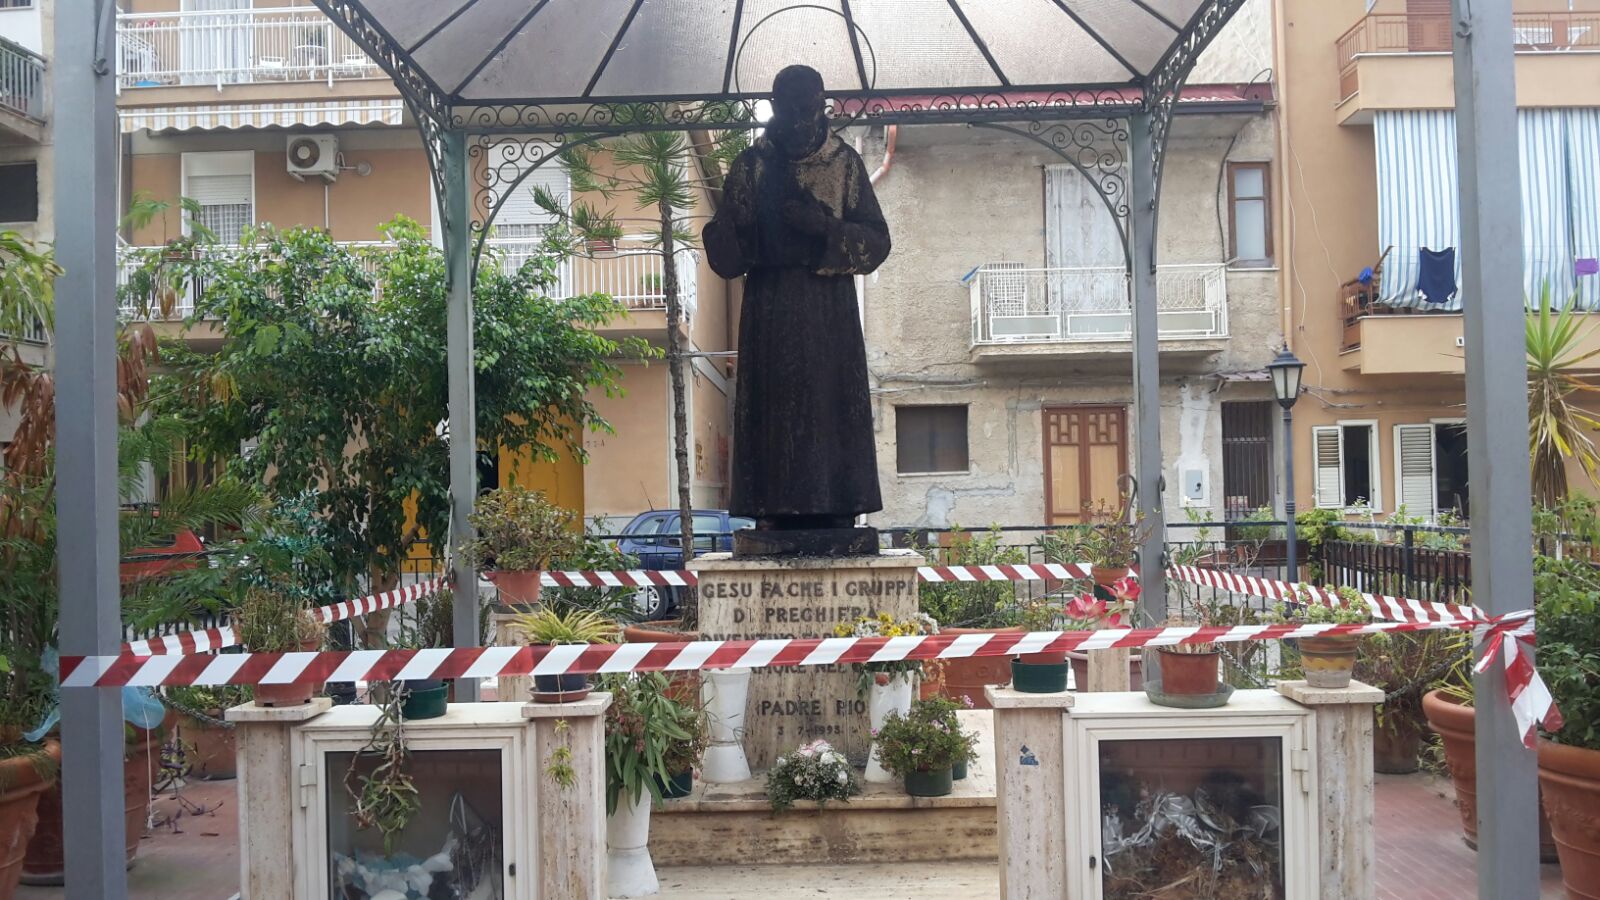 Al via una raccolta fondi per una nuova statua di Padre Pio